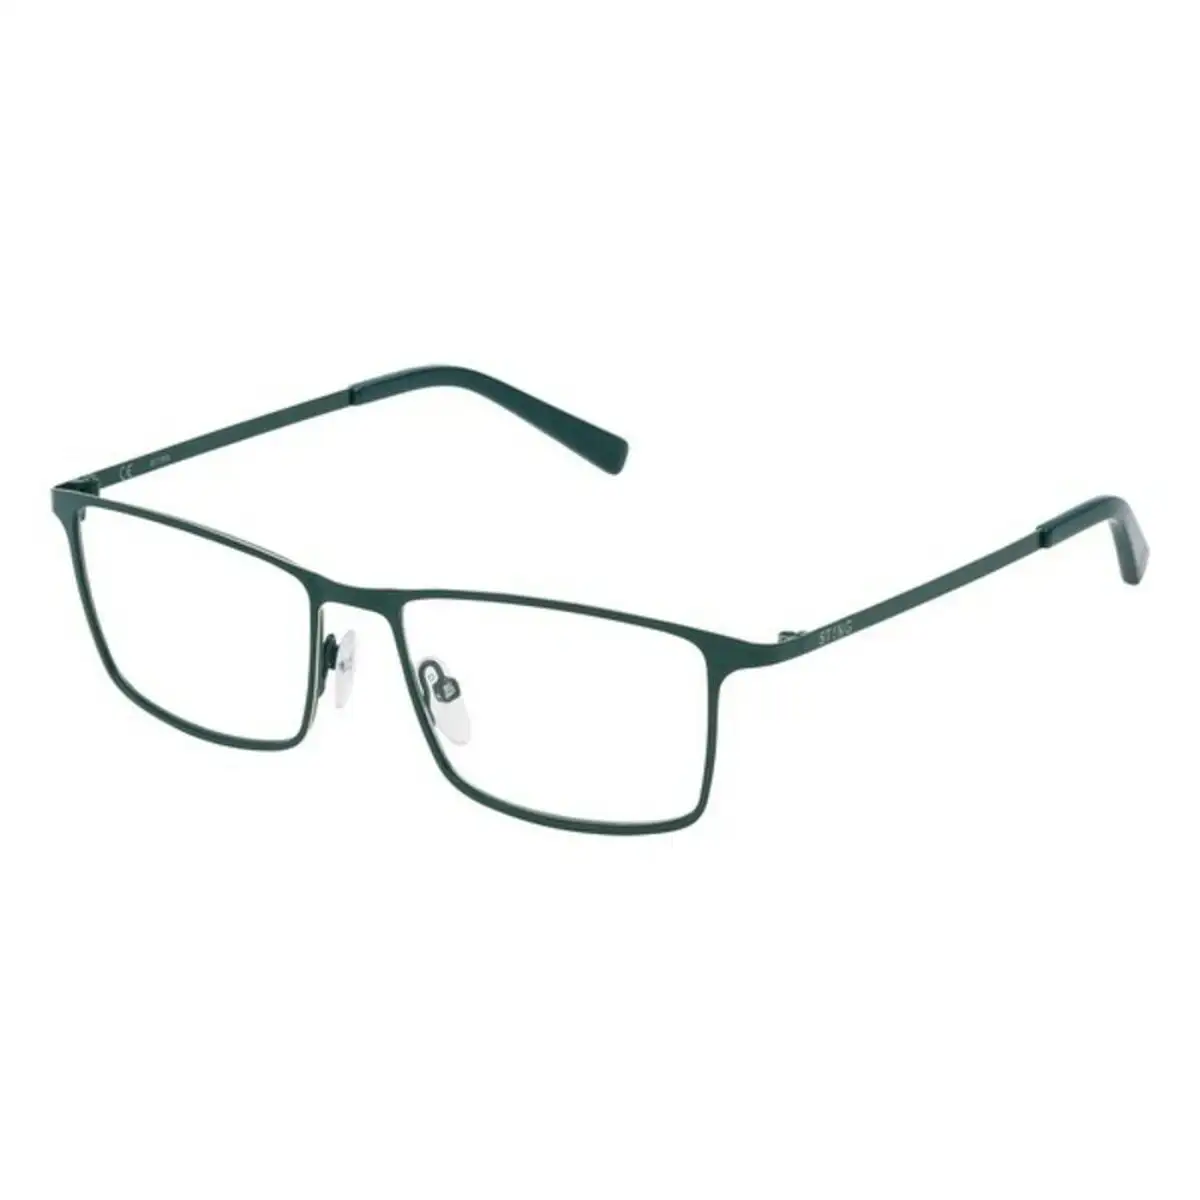 Monture de lunettes homme sting vst018530539 vert o 53 mm _7854. DIAYTAR SENEGAL - Votre Plateforme Shopping, Votre Choix Éclairé. Explorez nos offres et choisissez des articles de qualité qui reflètent votre style et vos valeurs.